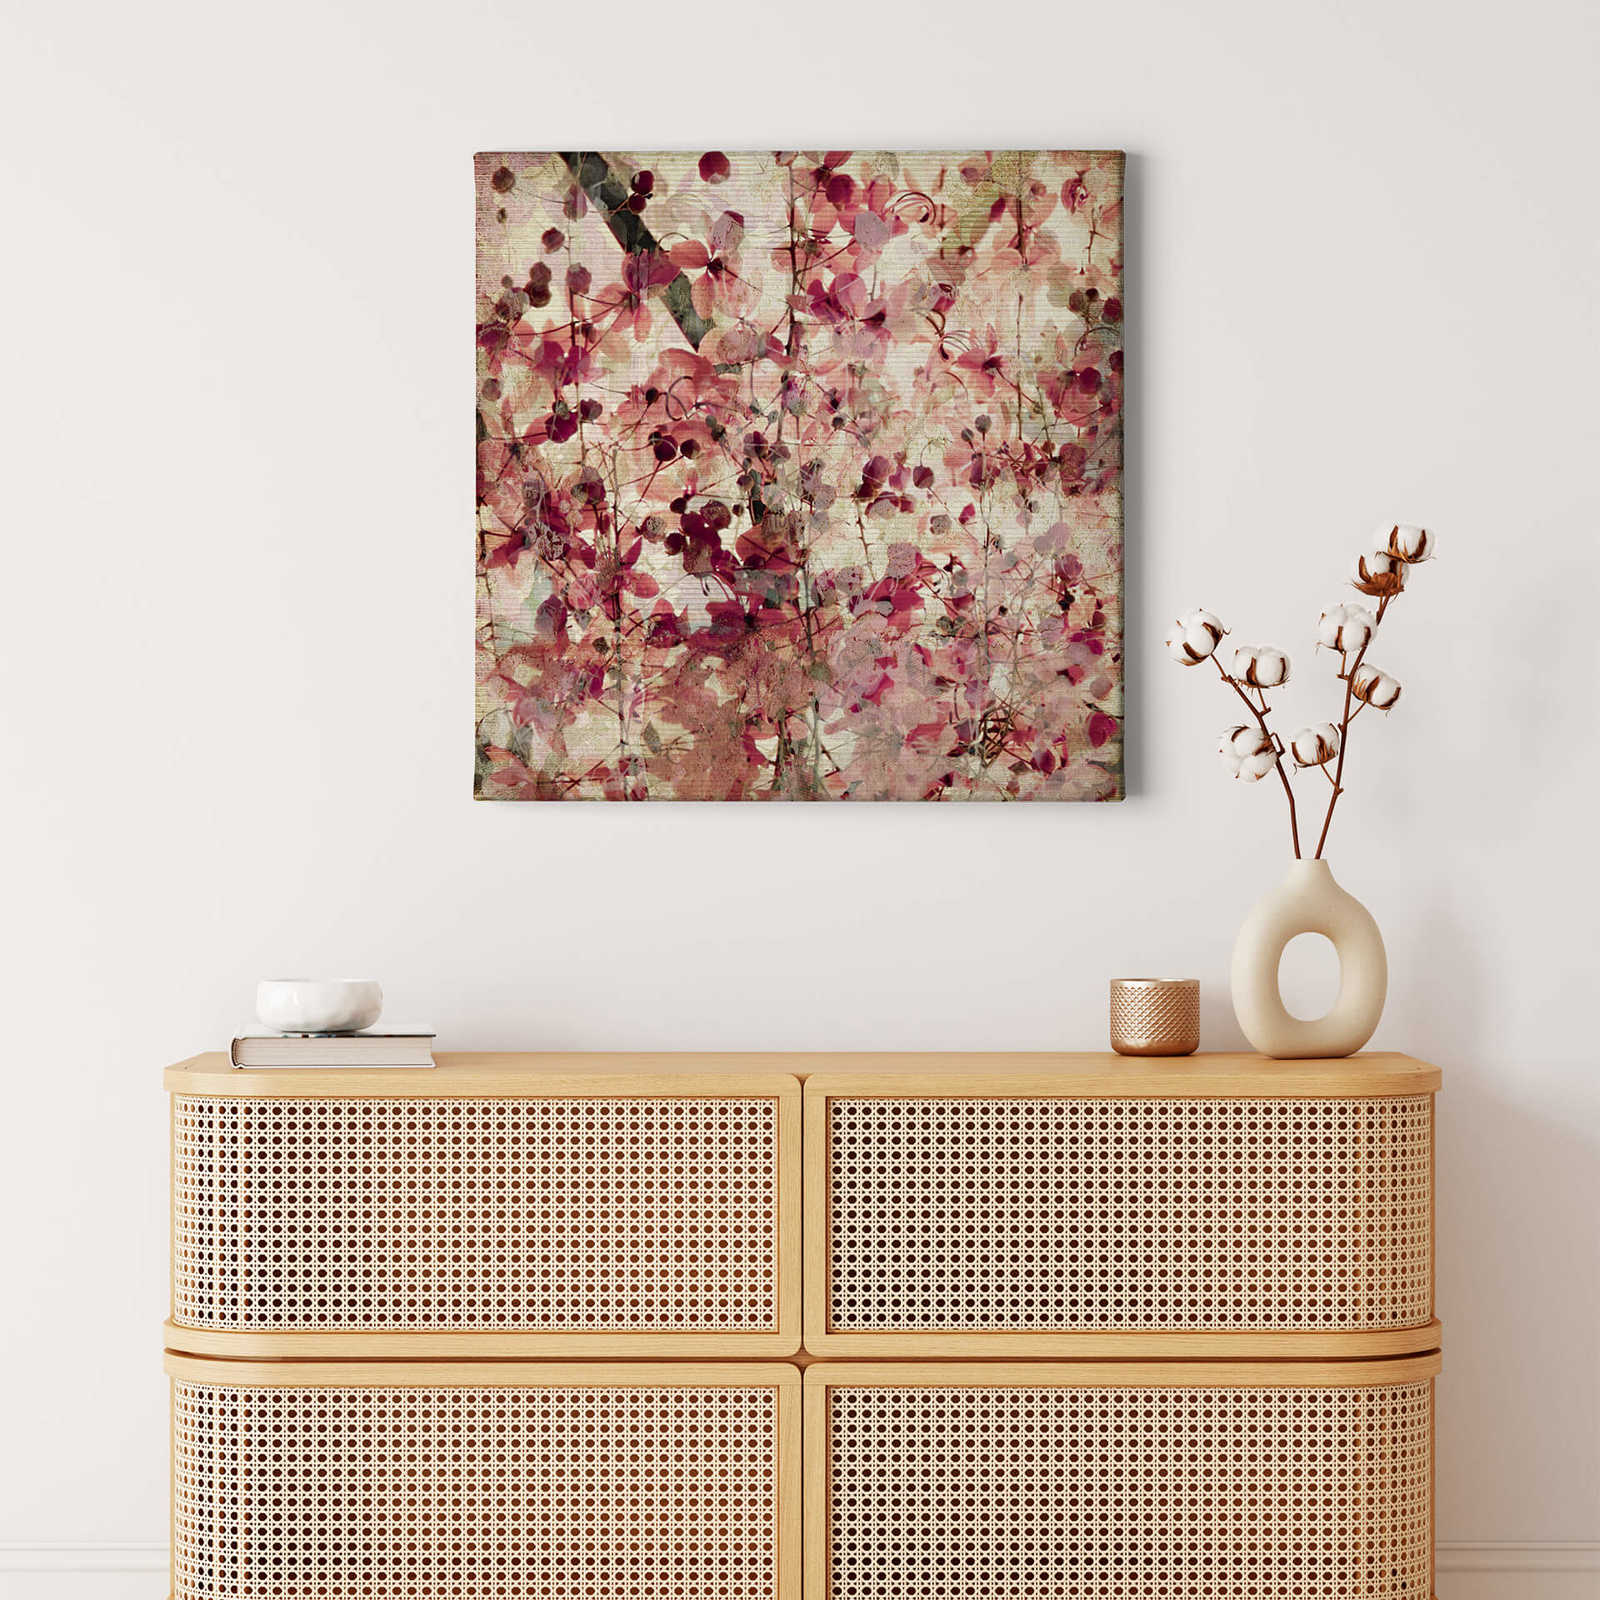             Quadratisches Leinwandbild Vintage mit floralem Muster – 0,50 m x 0,50 m
        